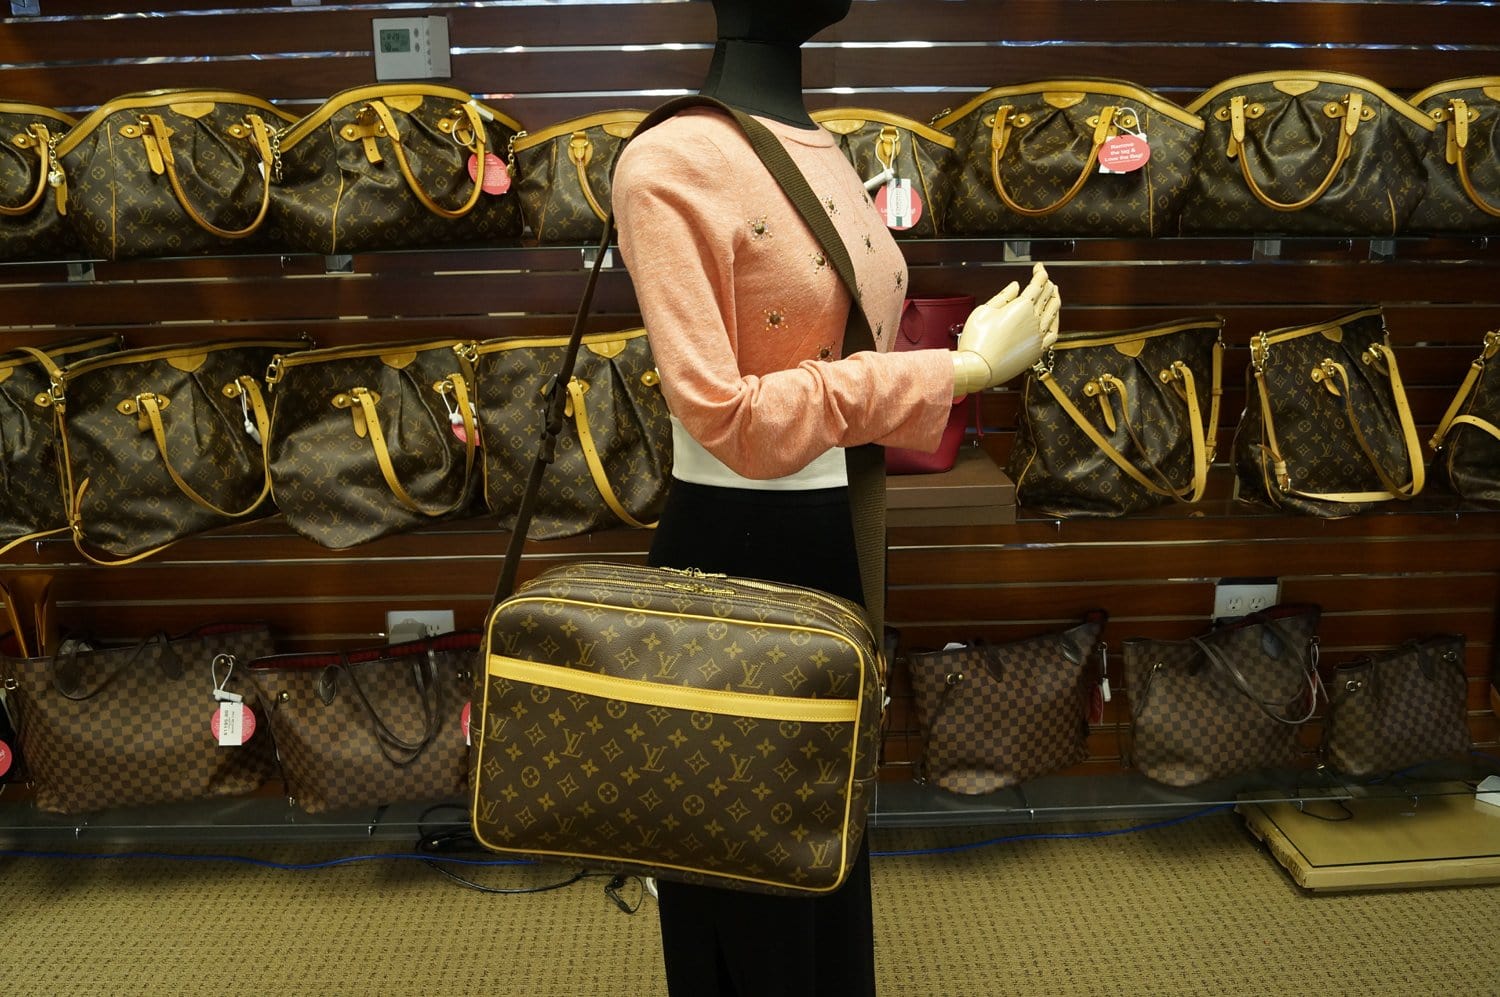 Shop for Louis Vuitton Monogram Canvas Leather Reporter GM Bag